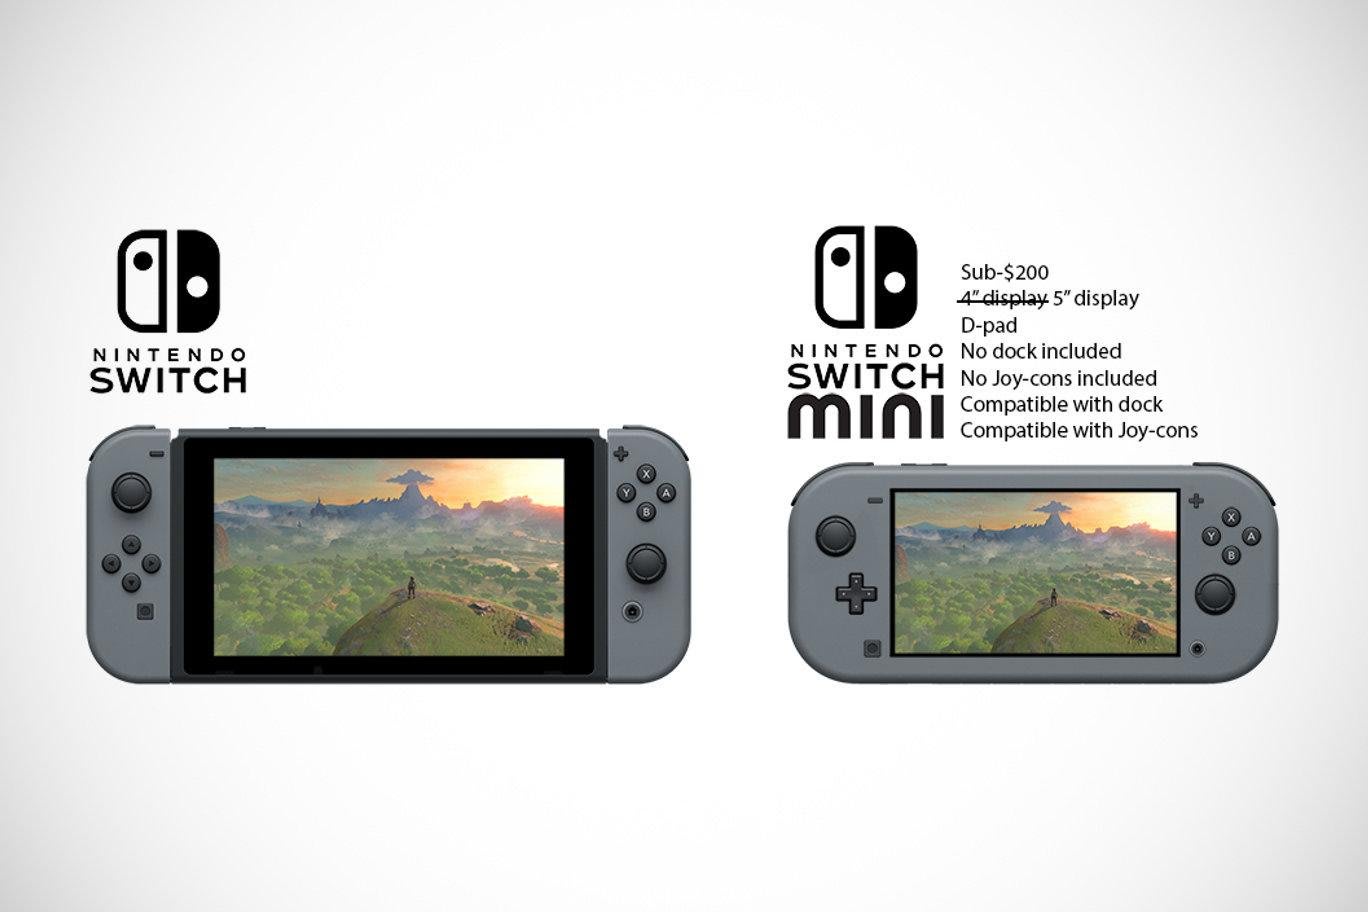 Nintendo switch размеры. Nintendo Switch Mini. Nintendo Switch размер дисплея. Нинтендо свитч Старая модель. Nintendo Switch Lite размер экрана.